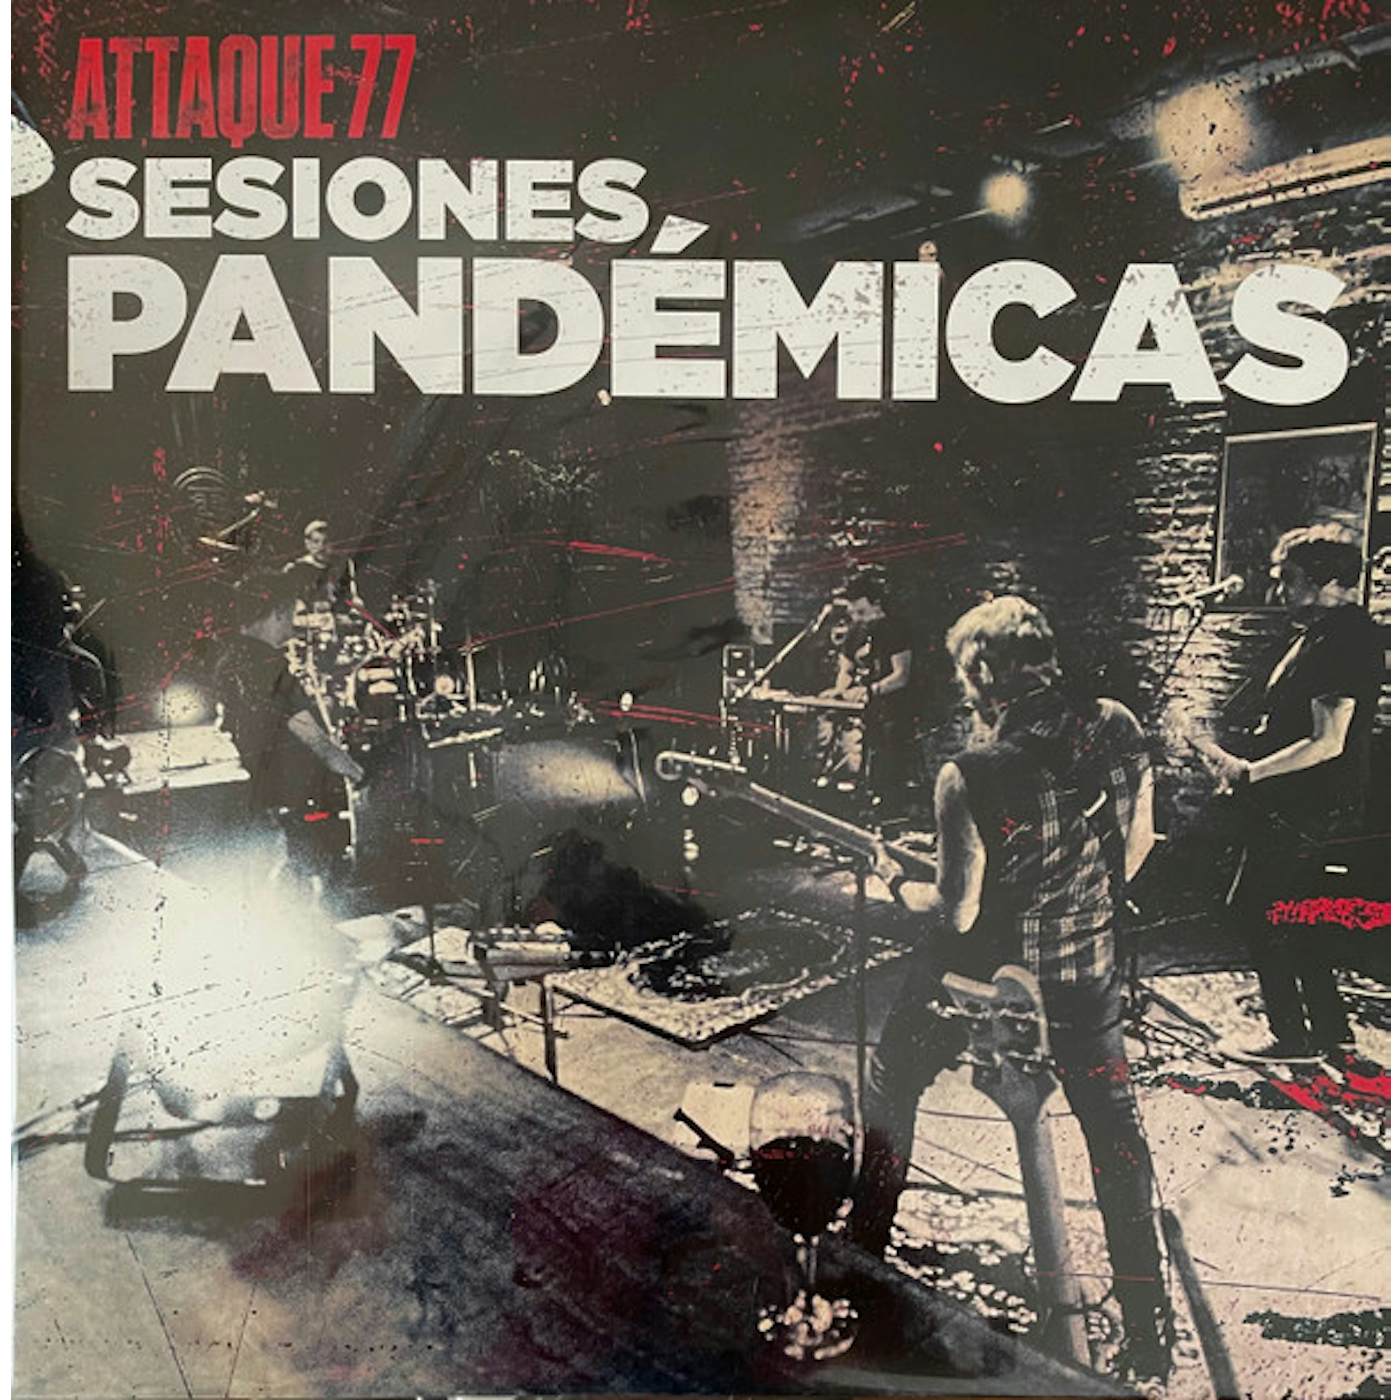 Attaque 77 SESIONES PANDEMICAS Vinyl Record